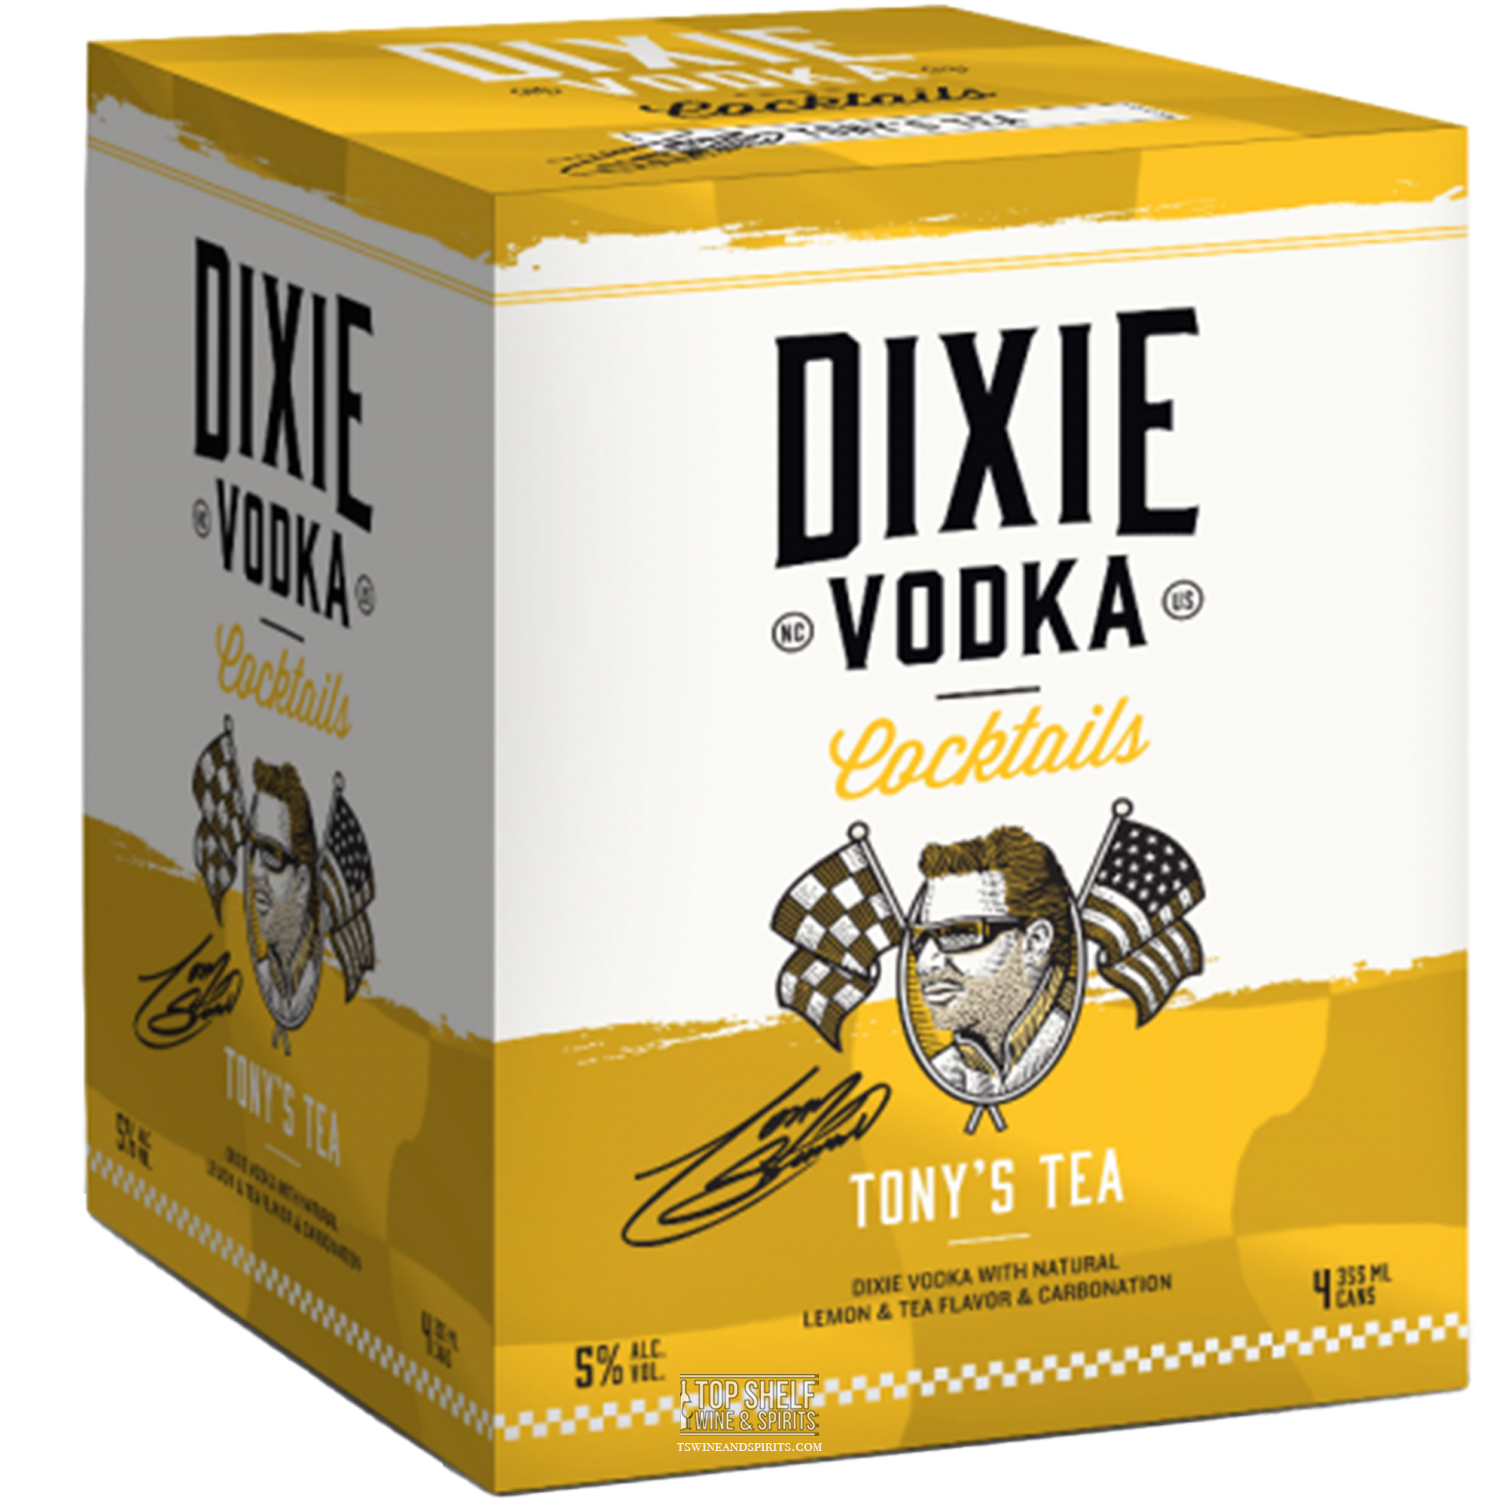 Dixie Vodka Cocktails Tony's Tea (4 Pack Cans)